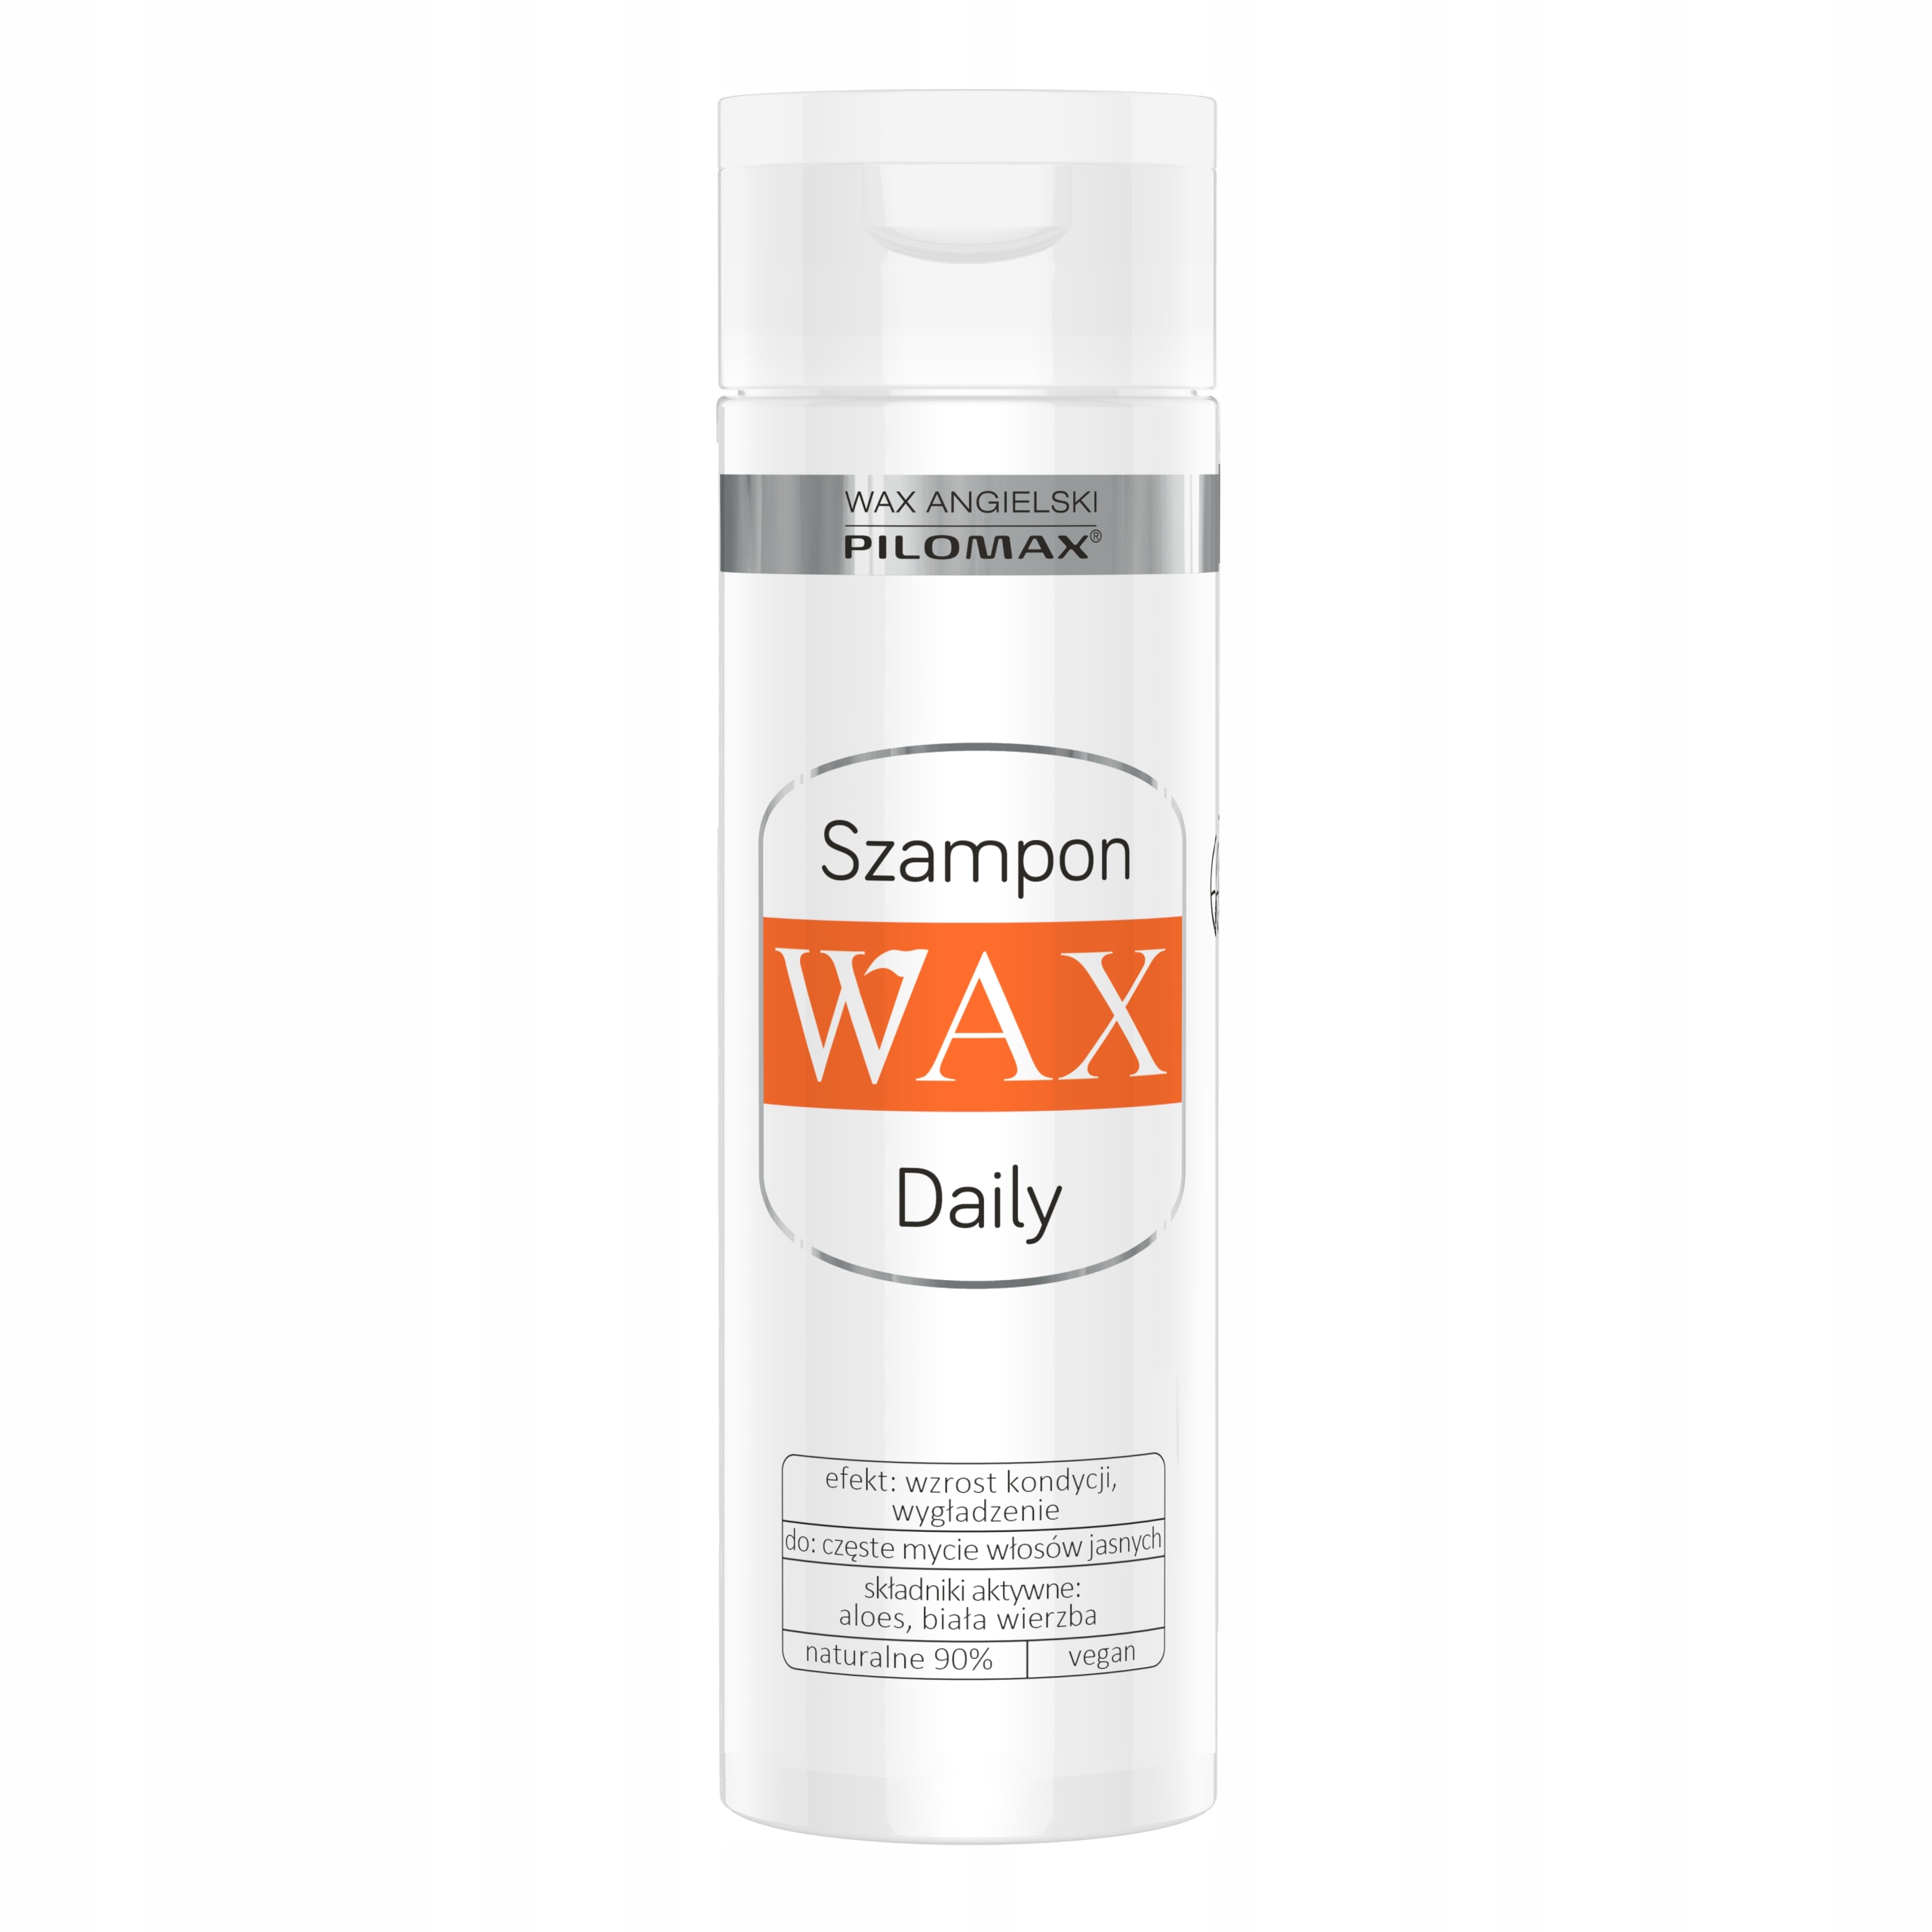 pilomax szampon głęboko oczyszczający do włosów jasnych